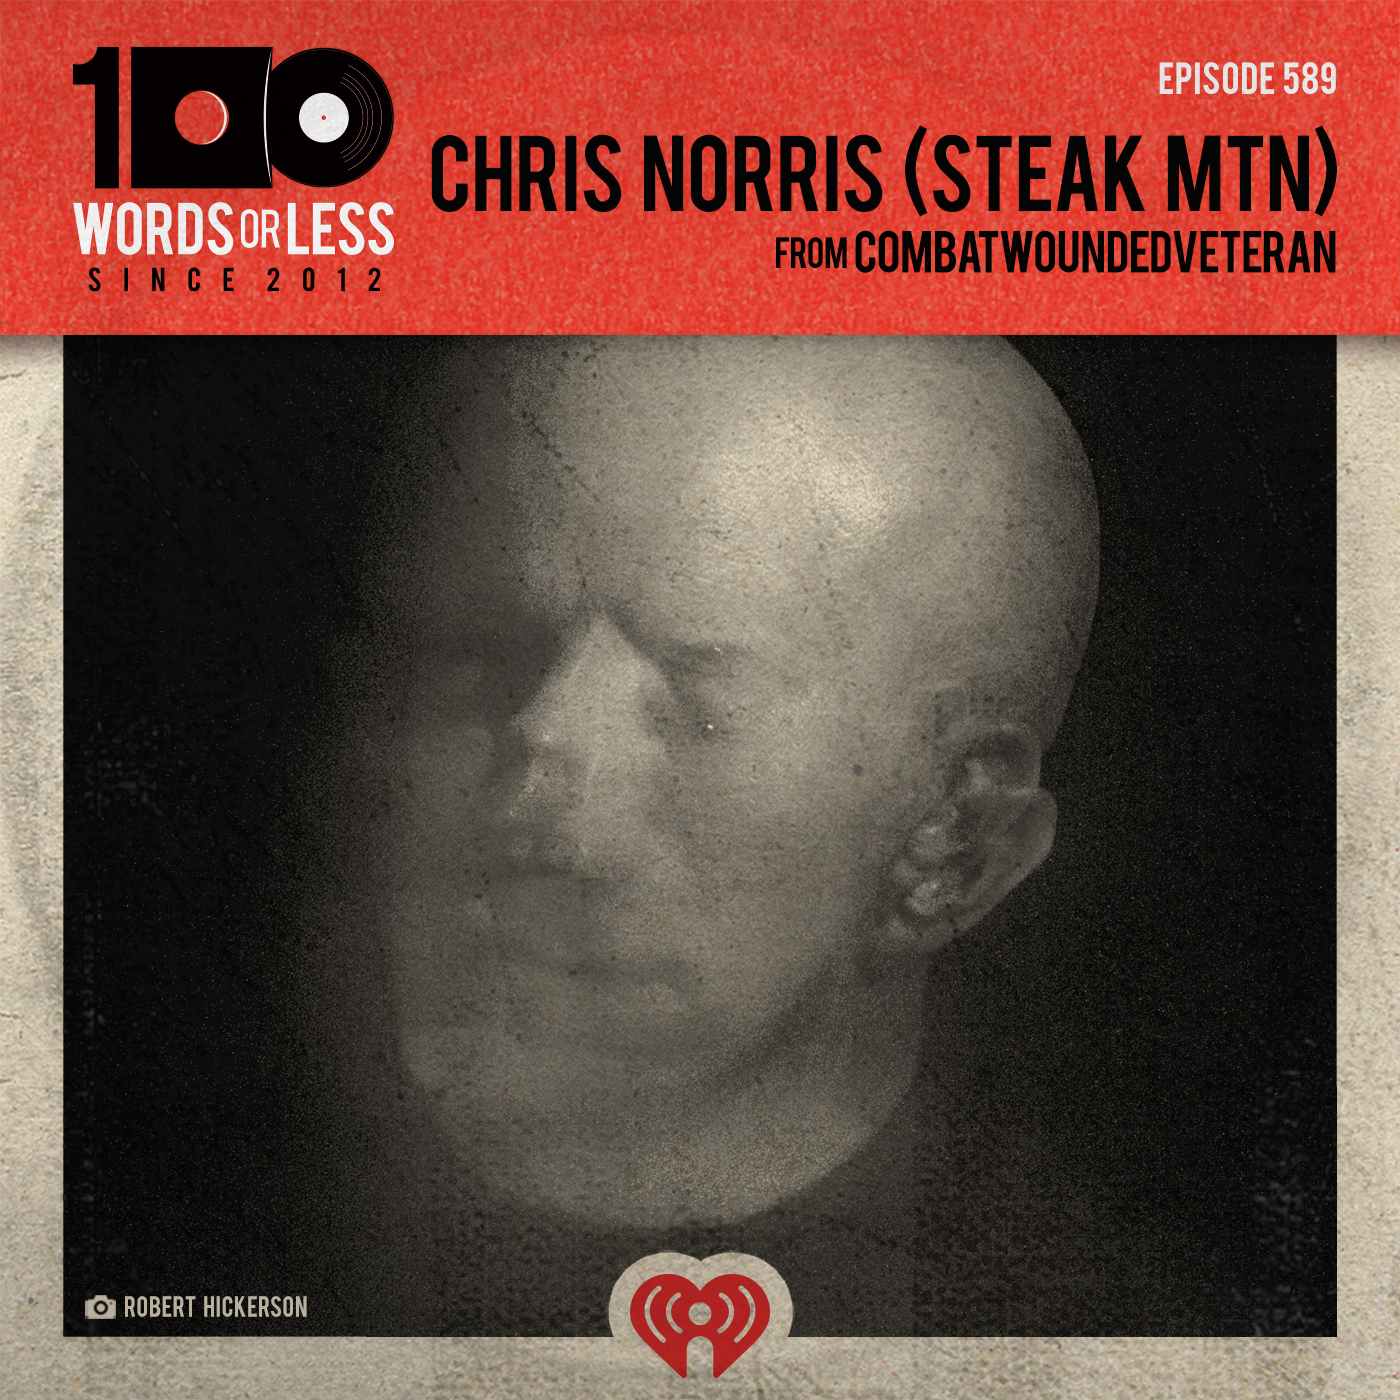 Chris Norris (Steak MTN) from CombatWoundedVeteran